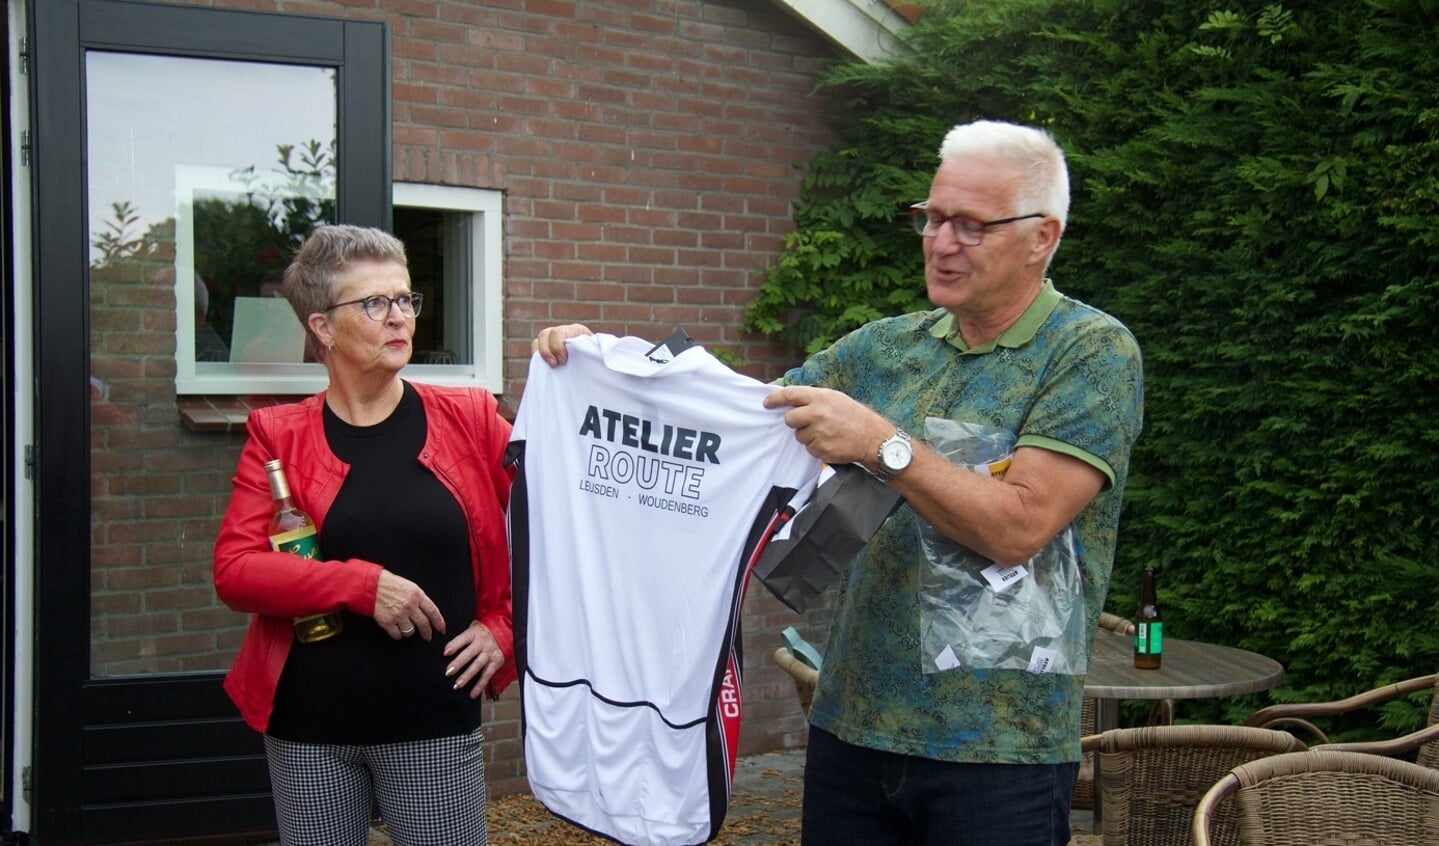 Peter en Remke van Schaik met een afscheidscadeau, zodat Peter ook op de racefiets de AtelierRoute kan blijven promoten.